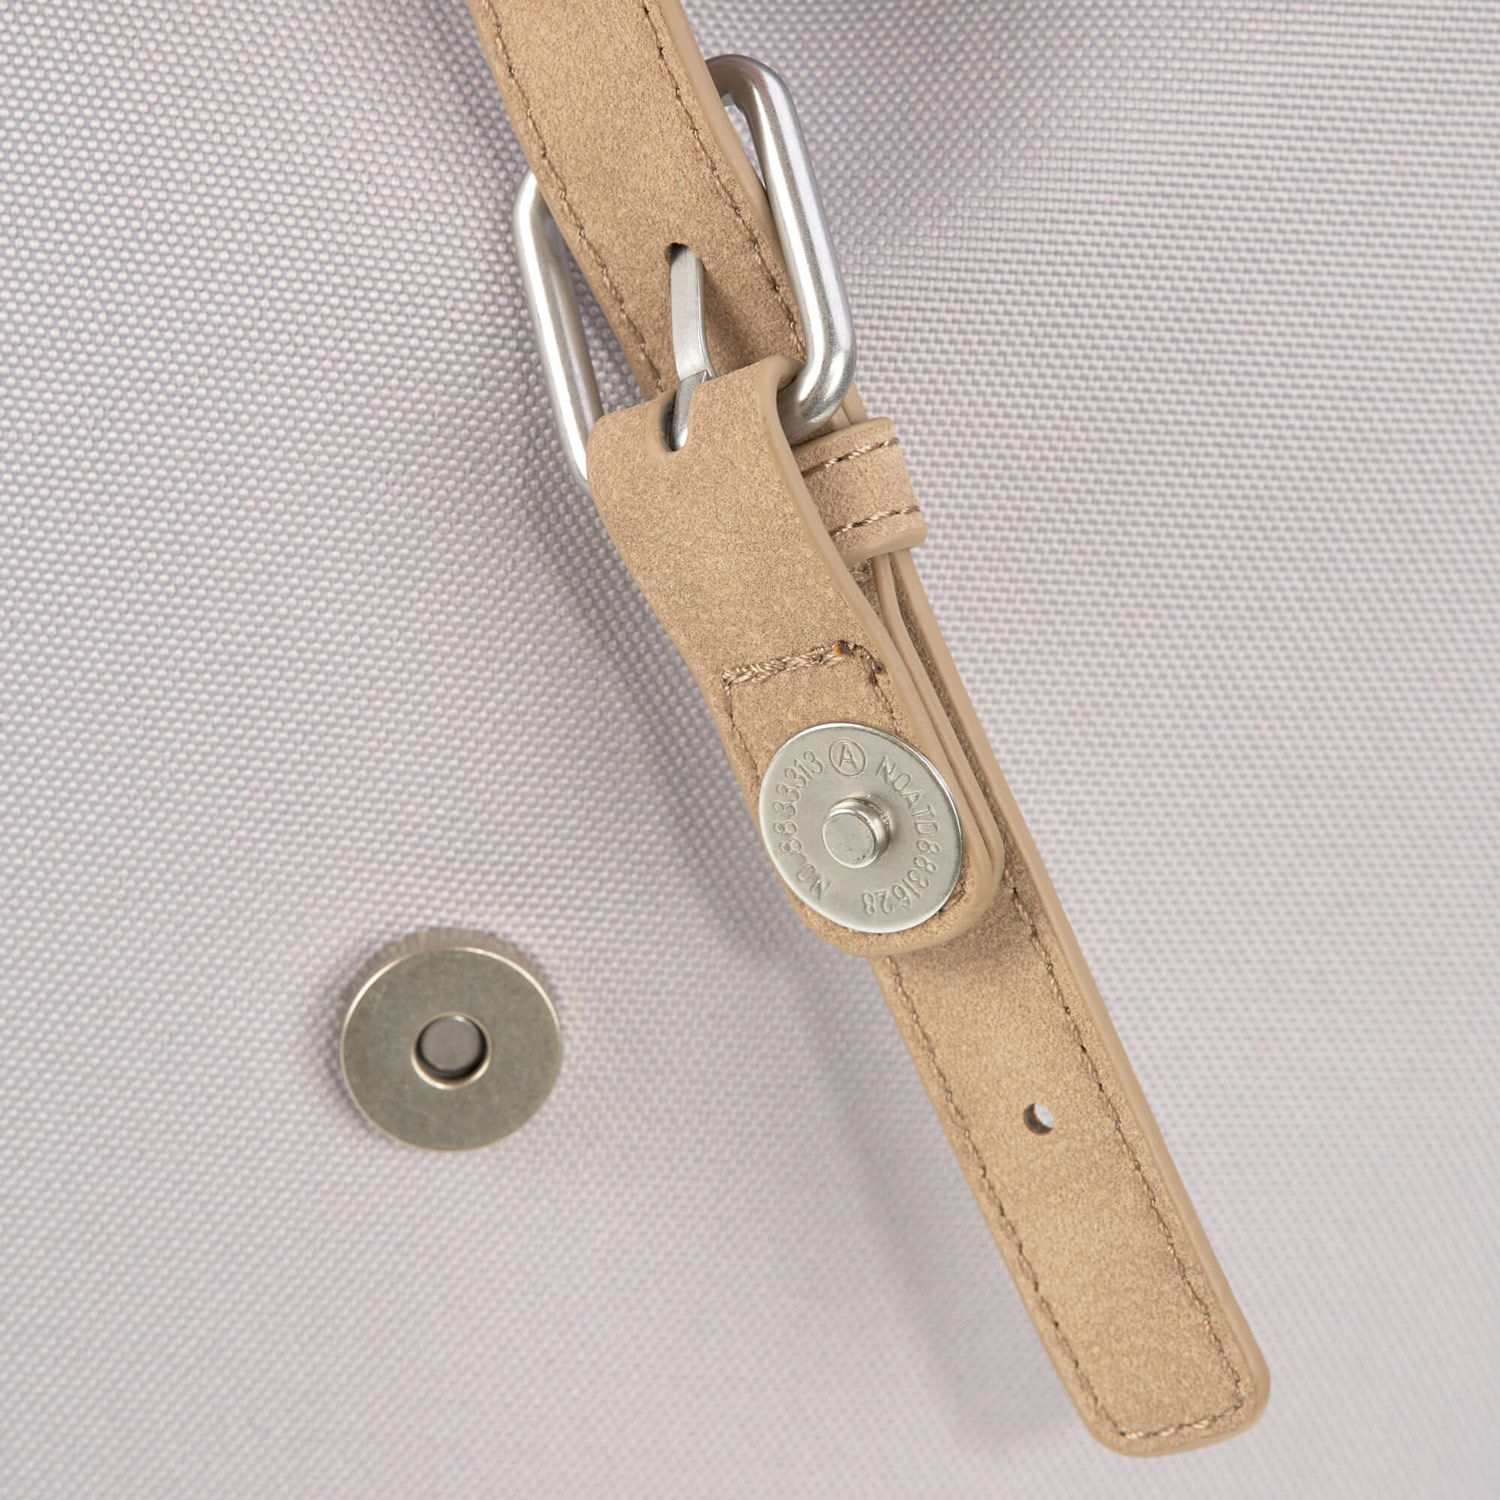 メインポケットの留め具のベルト先端はマグネットボタンなので、ワンタッチで素早く開閉可能。